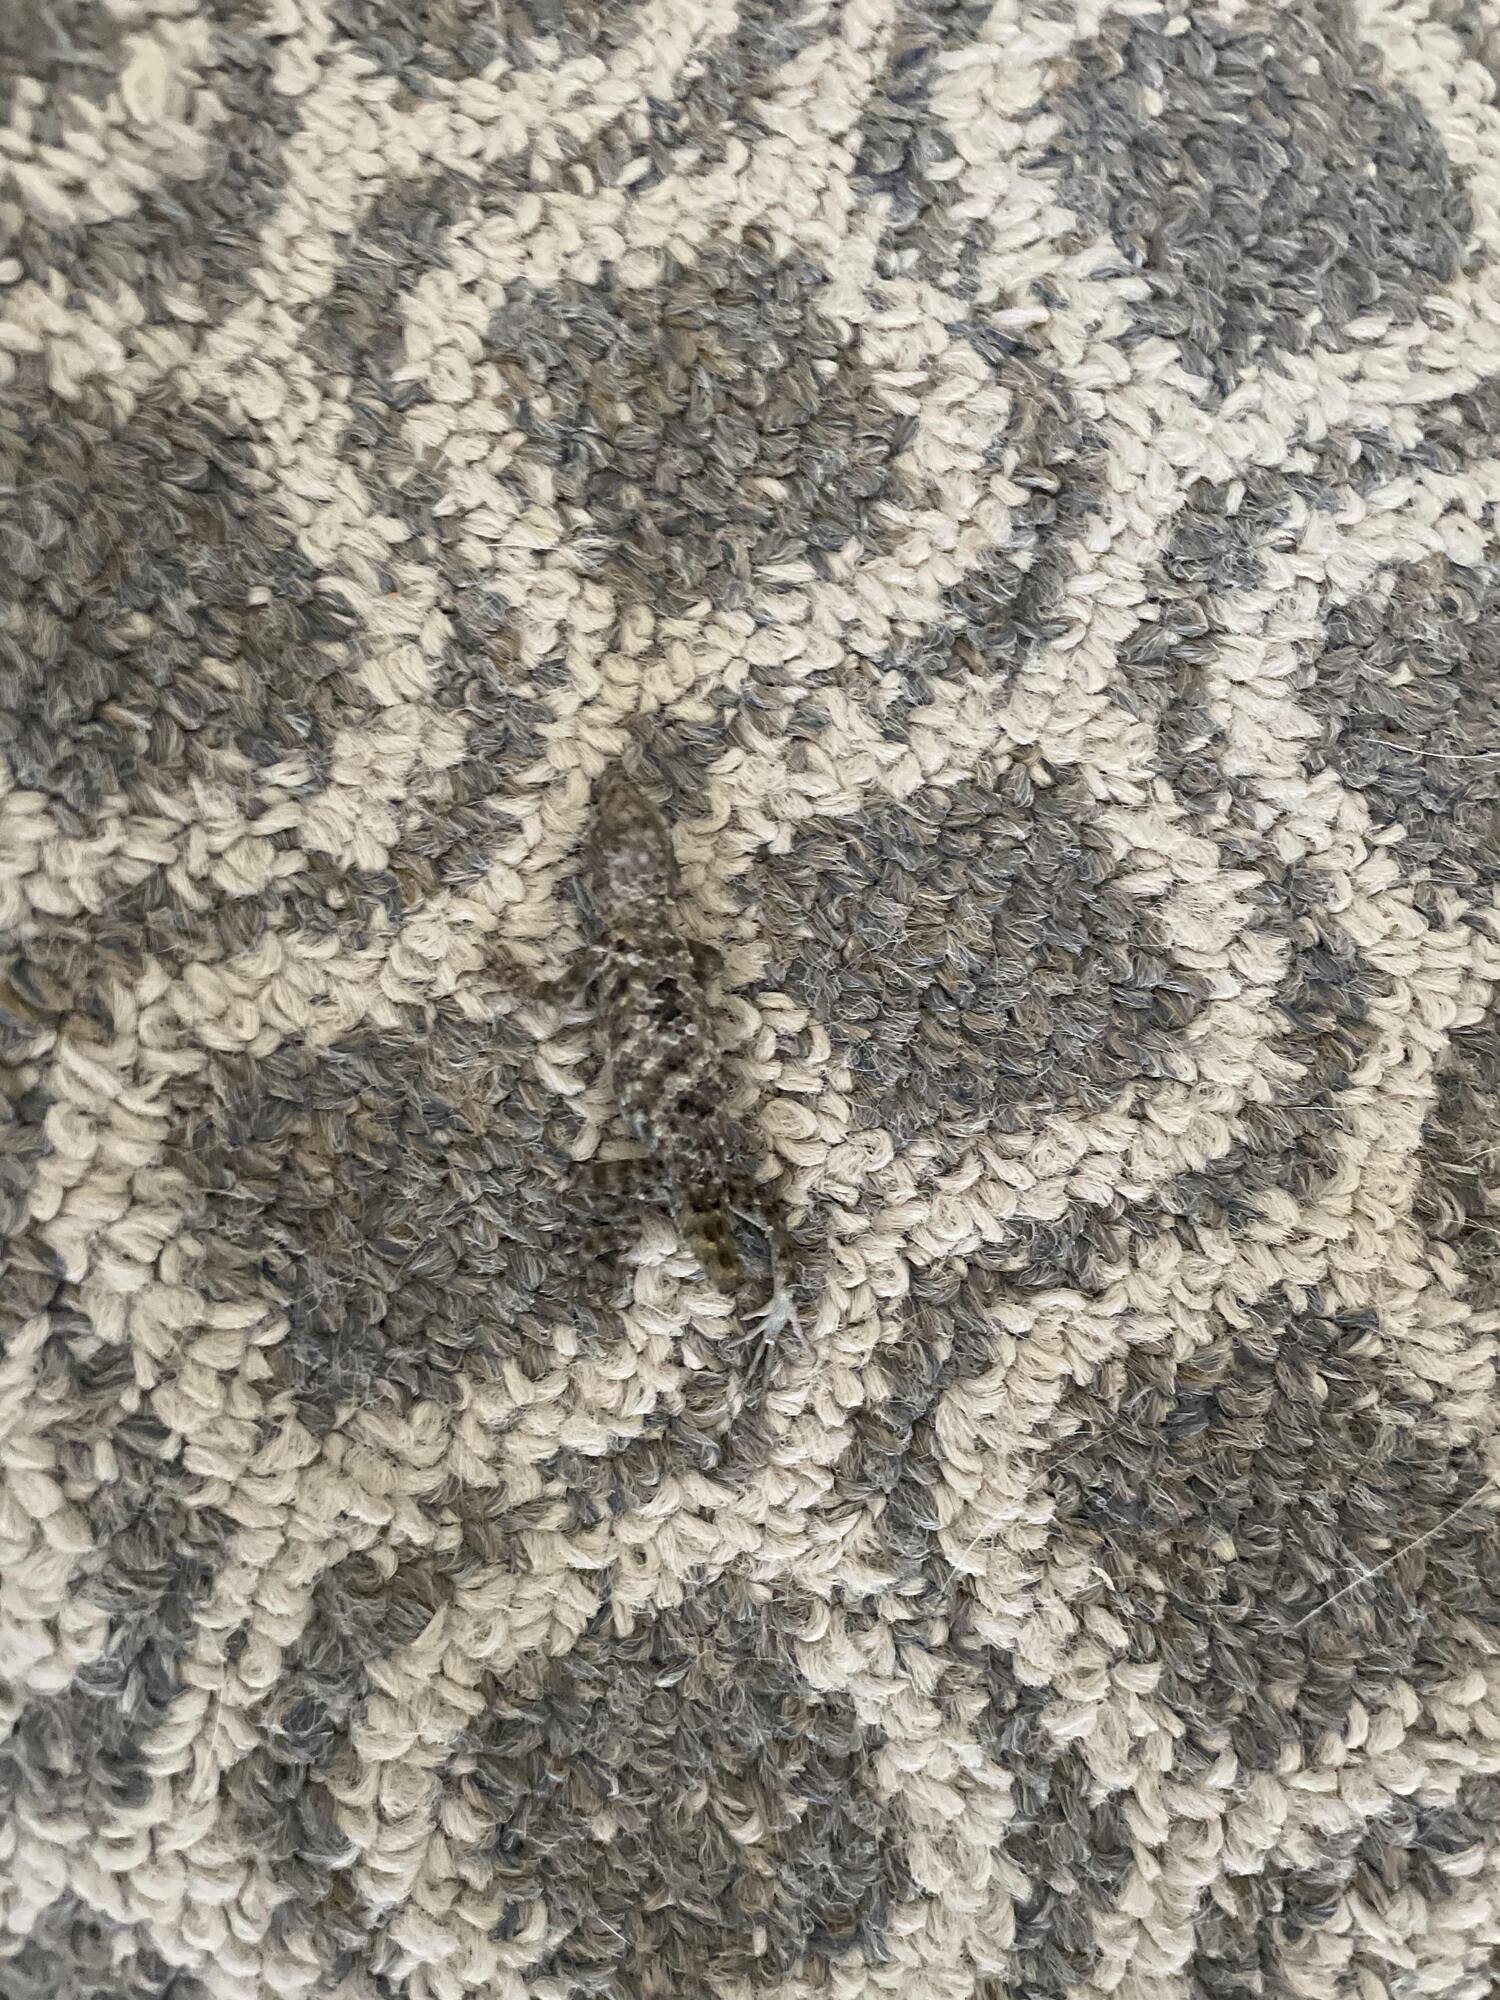 "Невидимая" ящерица сидела на ковре.